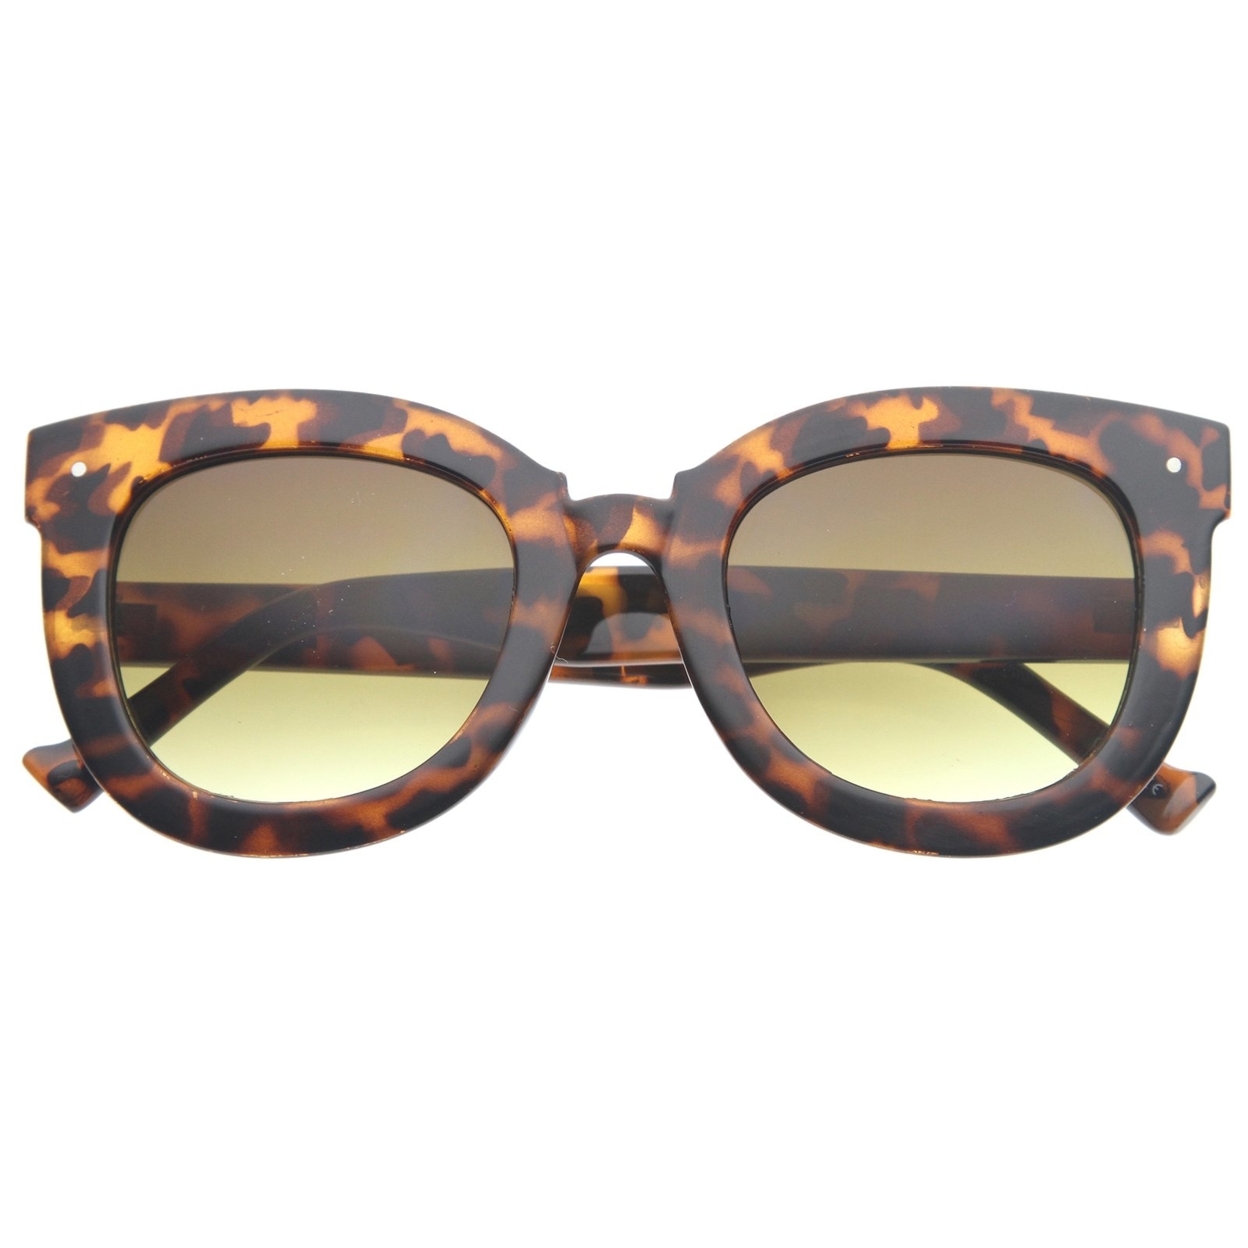 Womens Oversized Butterfly Horn Rimmed Round Cat Eye Sunglasses 67mm - Black / Lavender